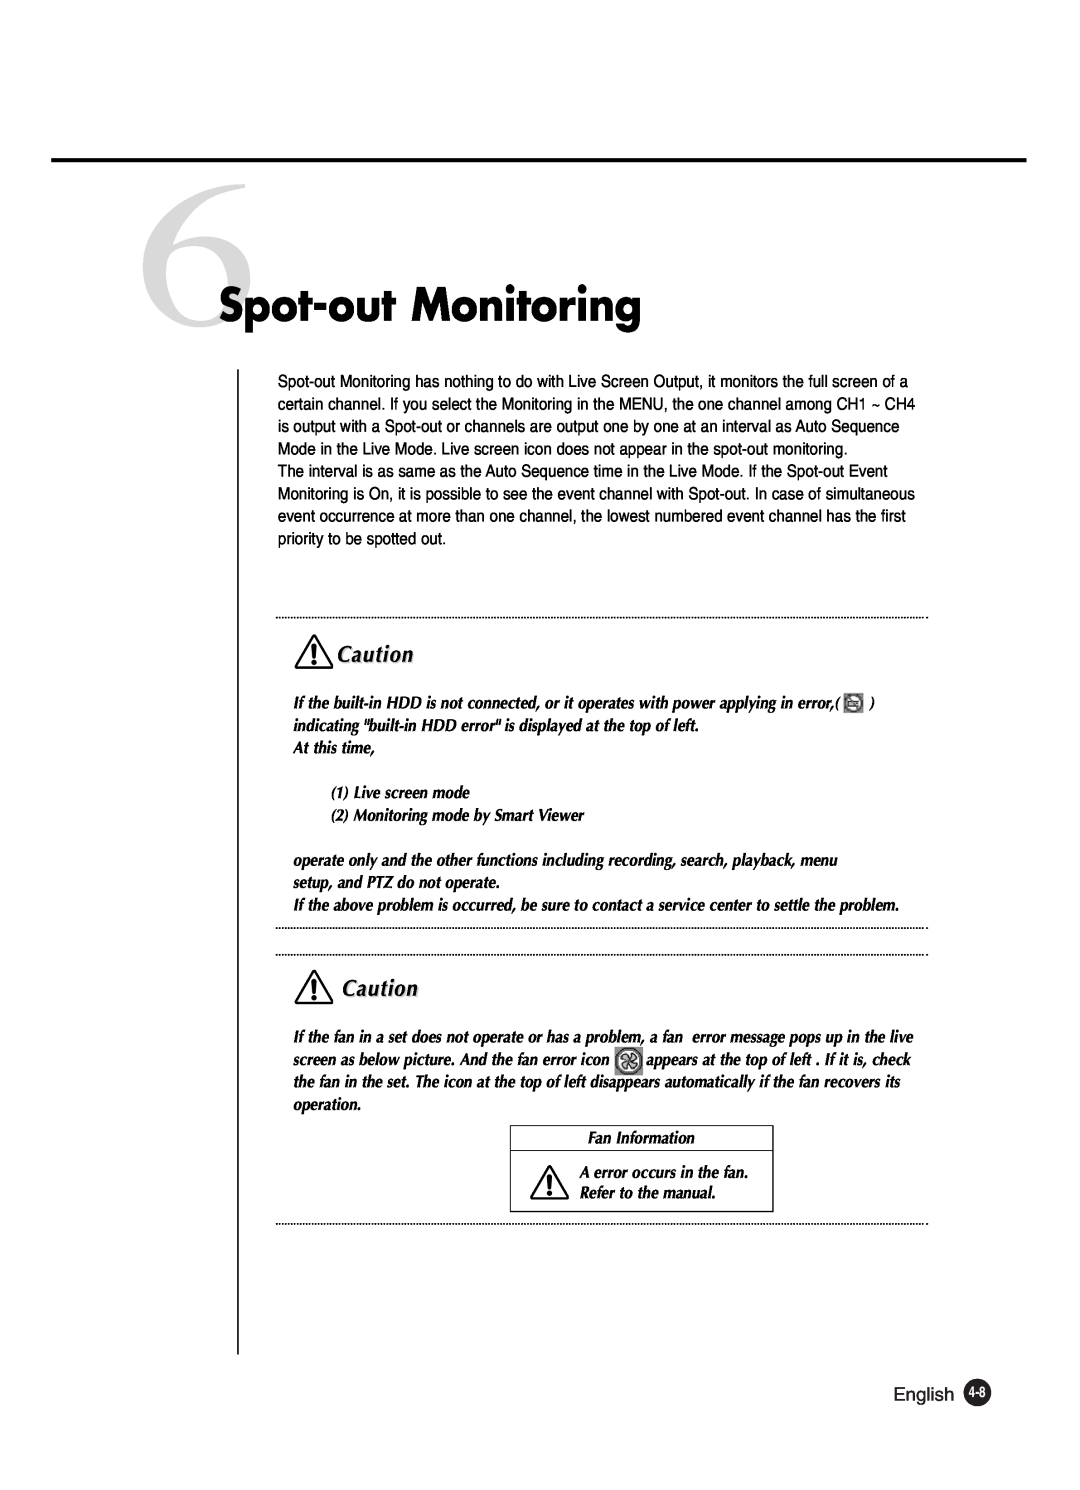 Samsung SHR-2042P250, SHR-2040P250 manual 6Spot-out Monitoring, English 